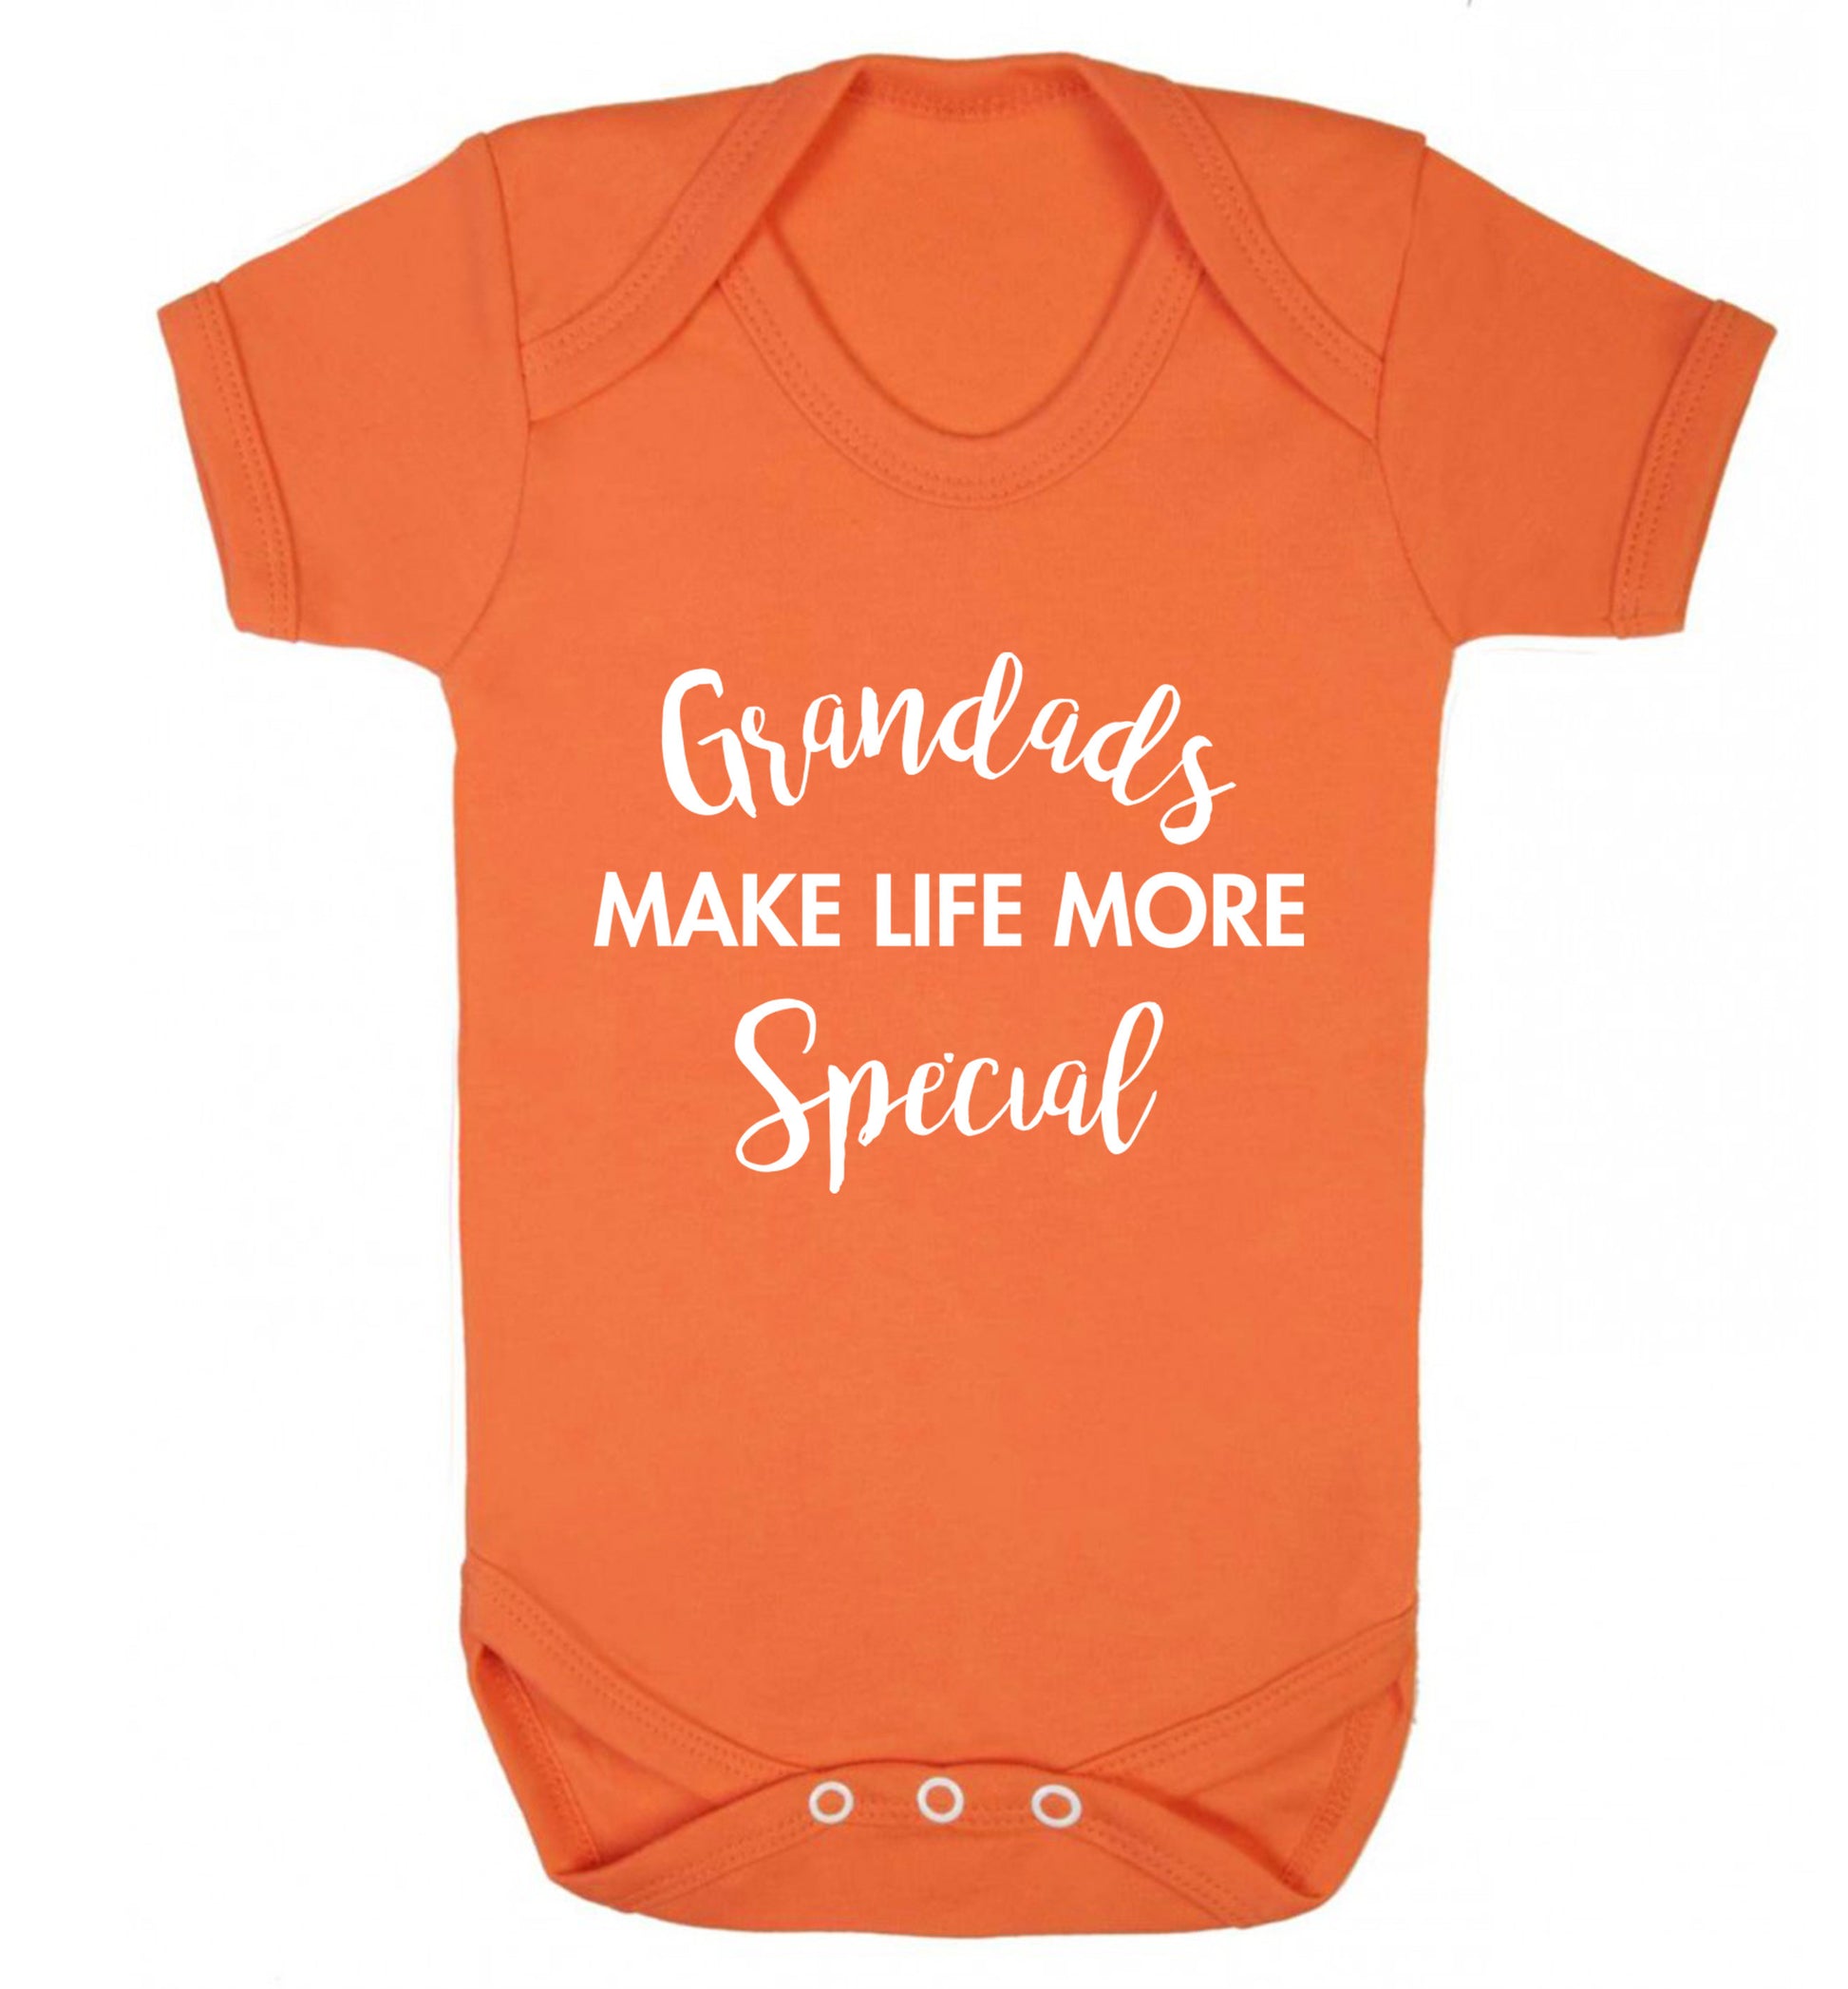 Grandads make life more special Baby Vest orange 18-24 months